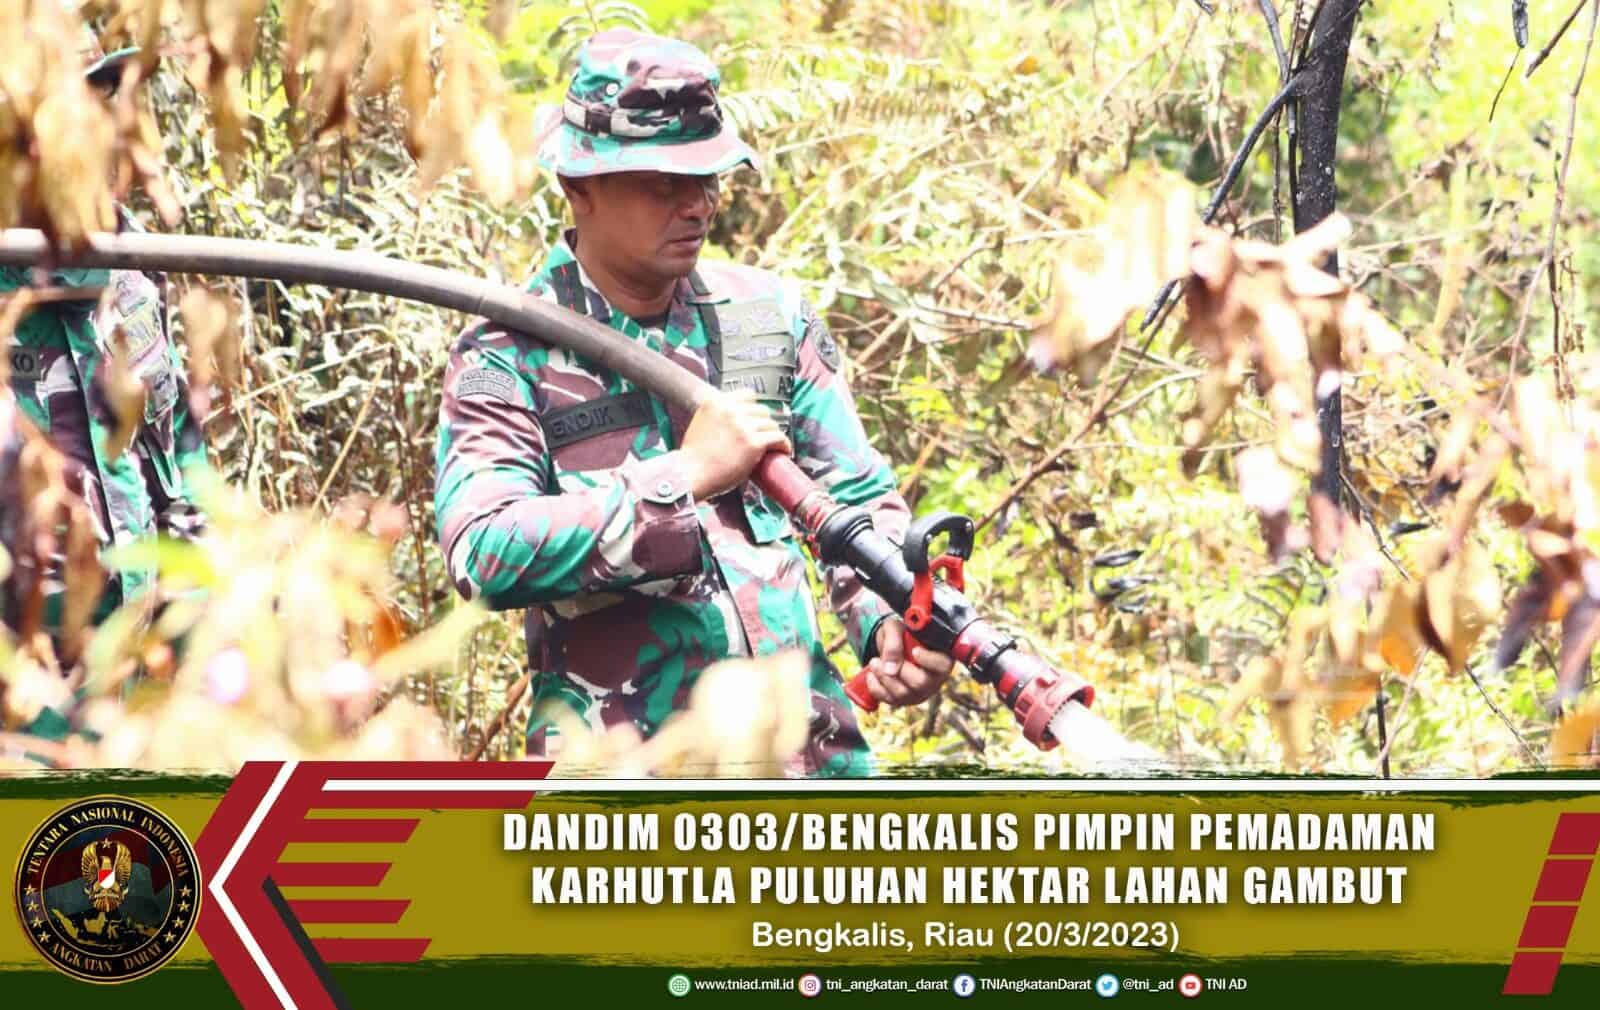 Dandim 0303/Bengkalis Pimpin Pemadaman Karhutla Yang Hanguskan Puluhan Hektar Lahan Gambut di Bengkalis